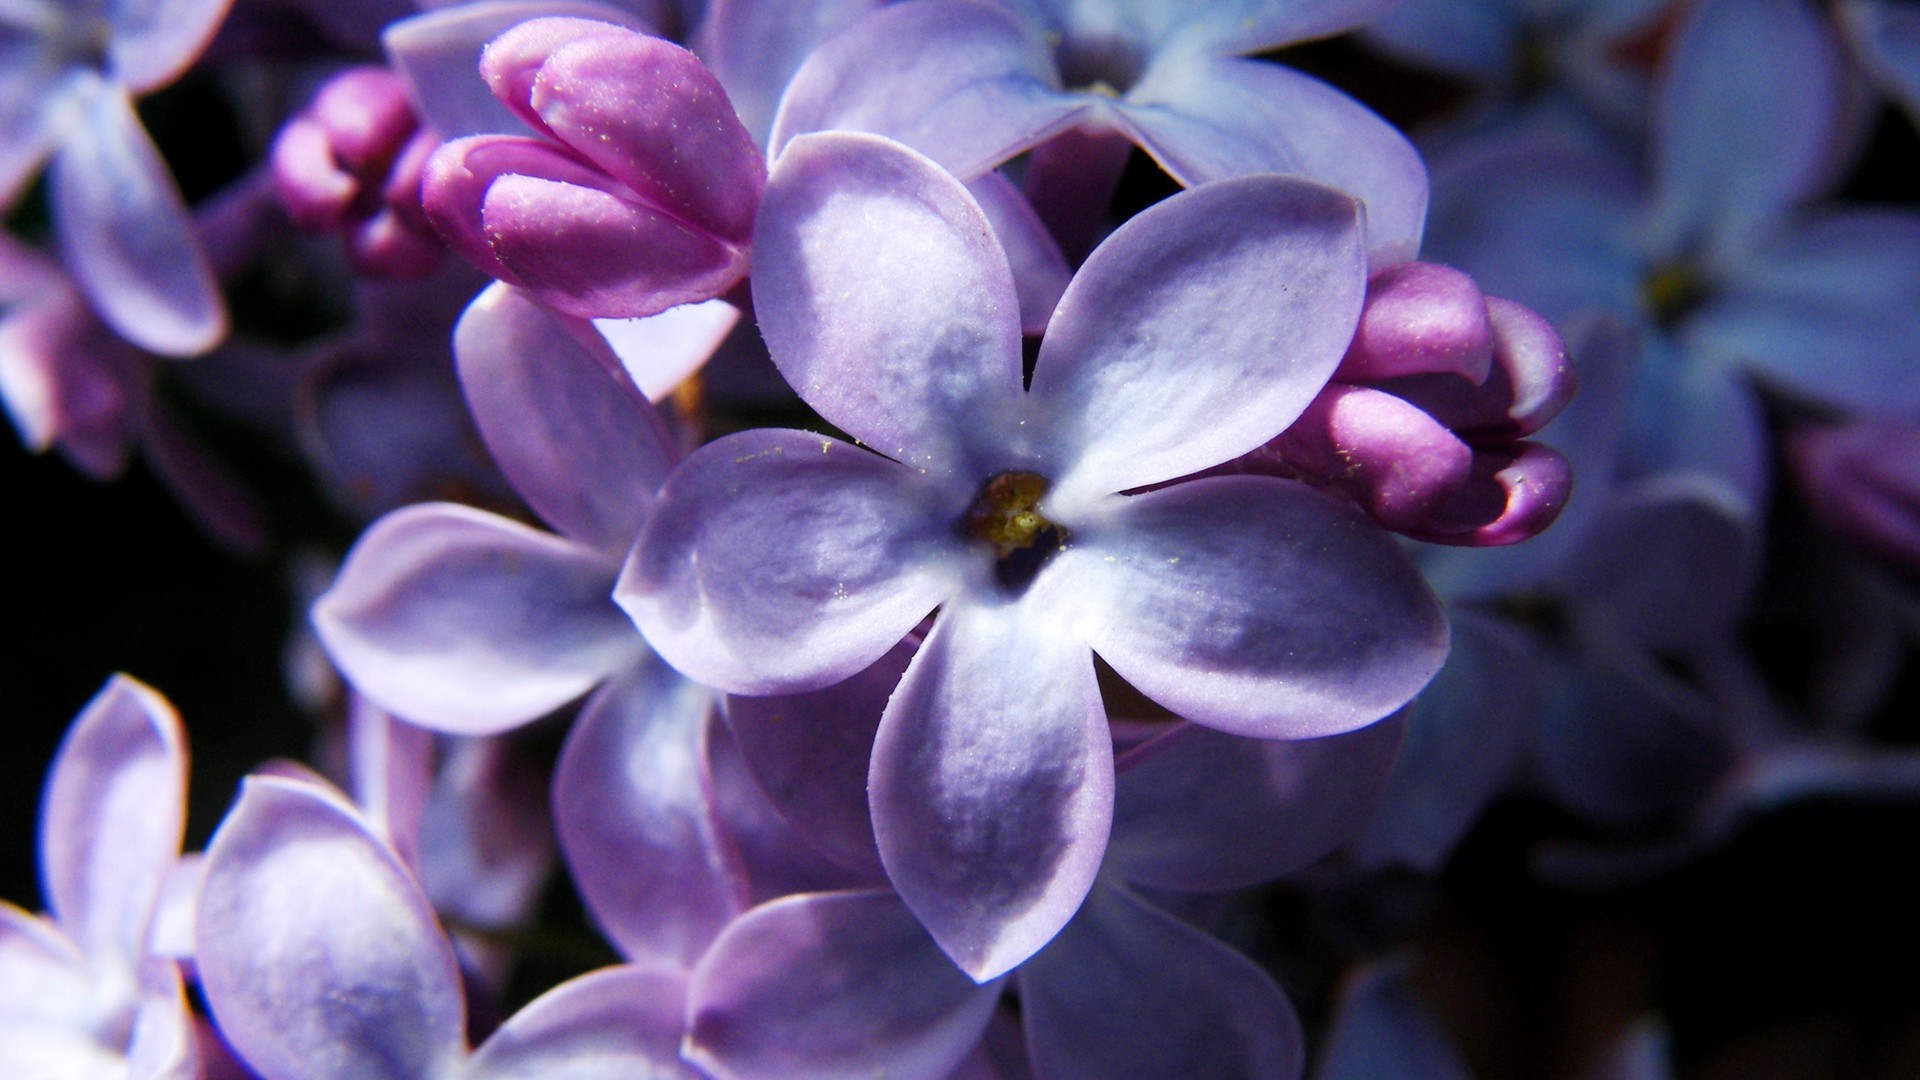 весна цветок природа флора лаванда цветочные лепесток цвет блюминг лето сад вайолет лист фиолетовый красивые